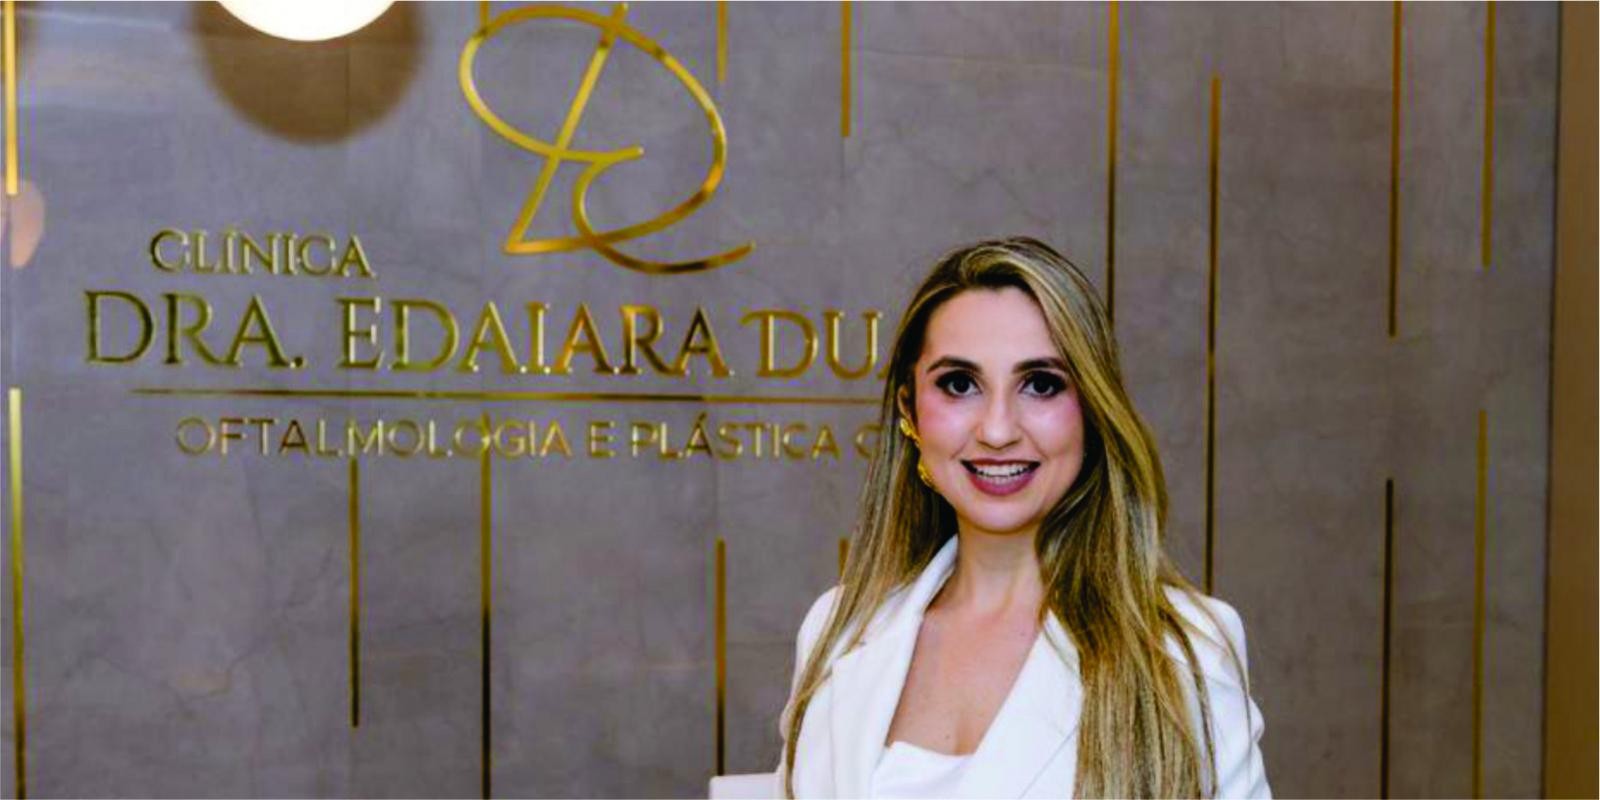 Evento seleto marca inauguração da Clínica Dra Edaiara Duarte, no Imperatriz Medical Center